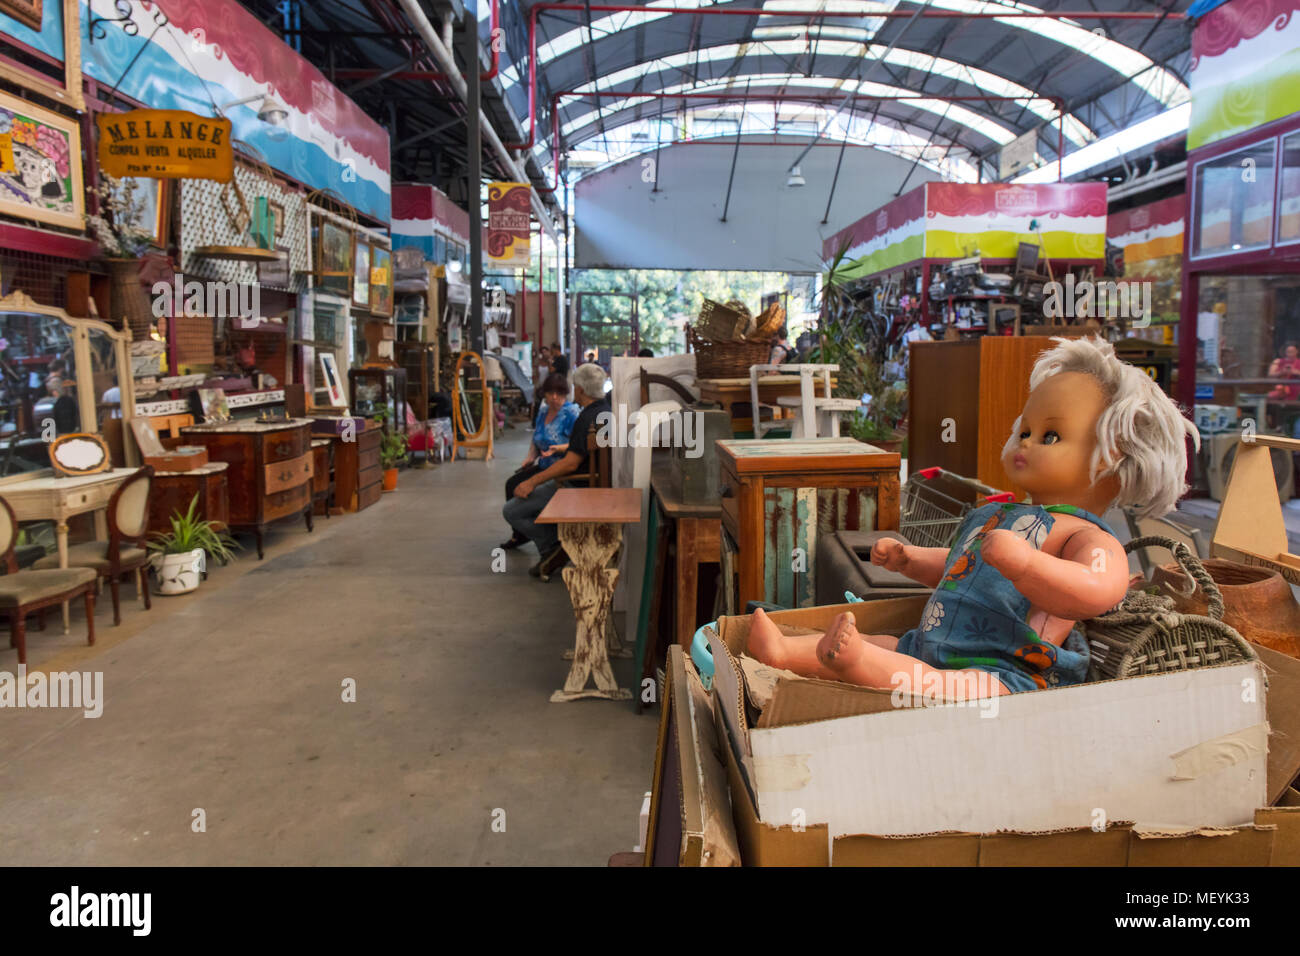 'Flea market' interiors (Mercado de las Pulgas) in Buenos Aires, Argentina. Stock Photo